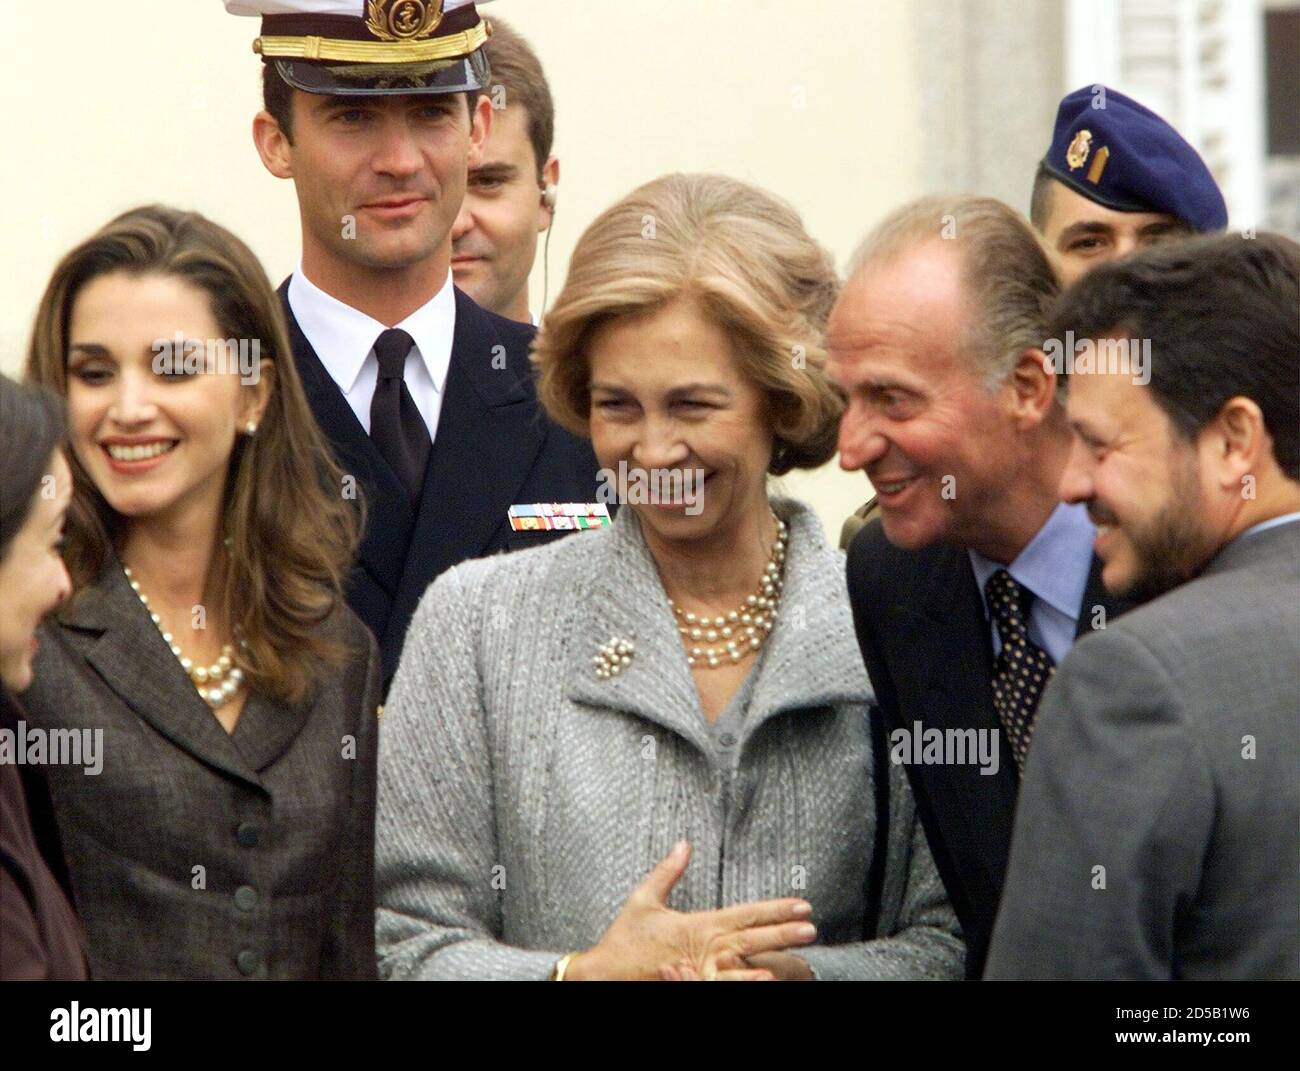 G-D) la princesse jordanienne Alia, la reine jordanienne Rania, le prince  héritier espagnol Felipe, la reine espagnole Sofia, le roi espagnol Juan  Carlos et le roi jordanien Abdullah partagent un rire lors